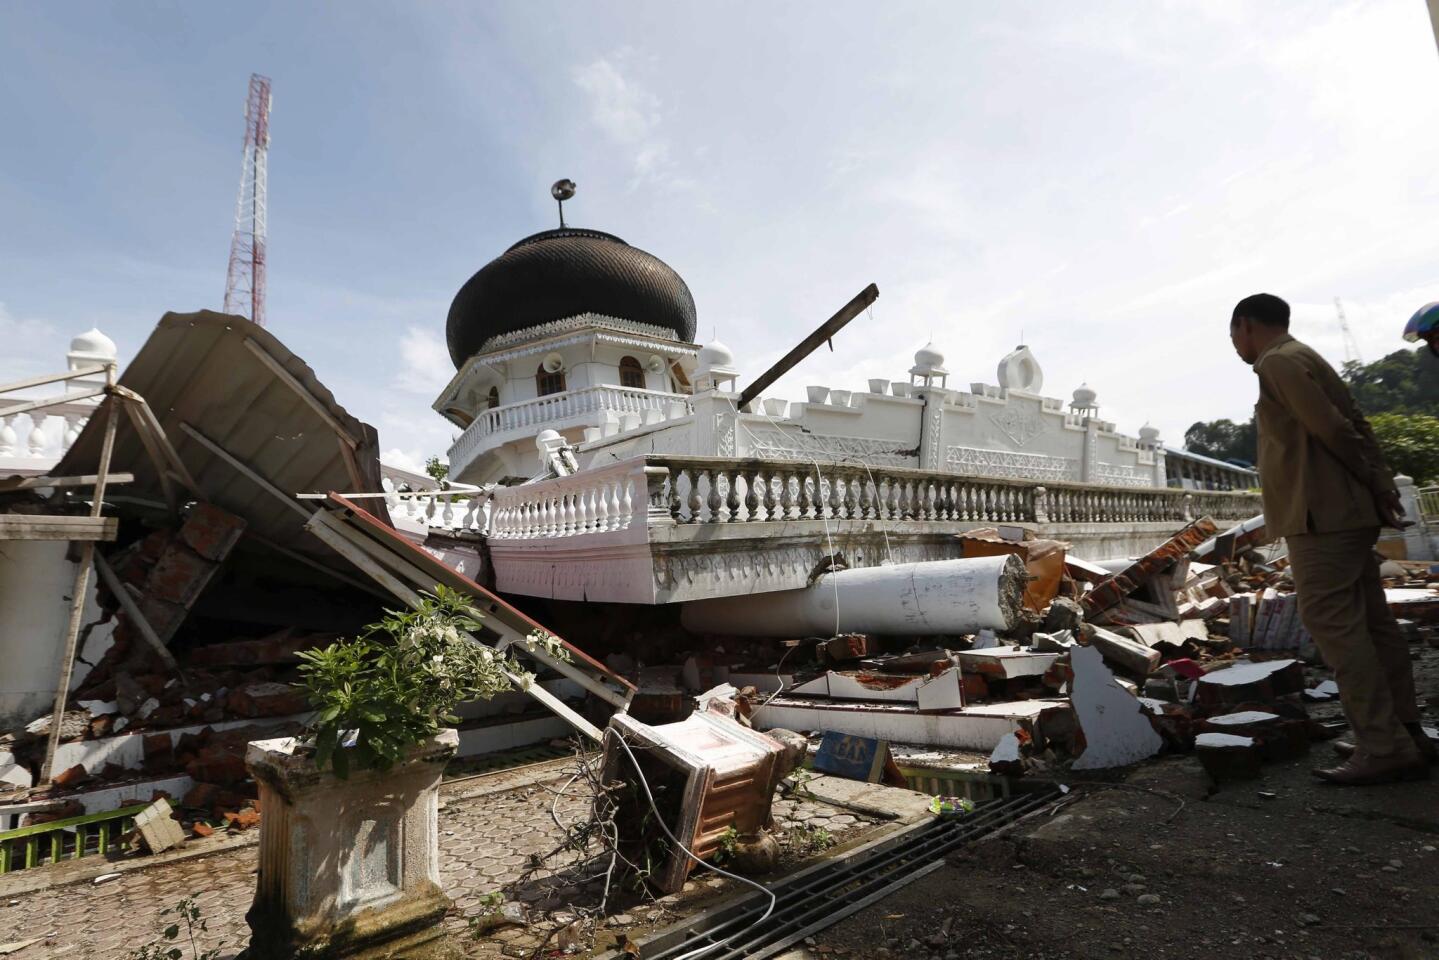 Un ciudadano indonesio inspecciona una mezquita destruída tras el terremoto de 6.5 grados. El Servicio Geológico de Estados Unidos señaló que el sismo de magnitud 6.5 ocurrió a las 5:03 a.m. locales y tuvo su epicentro a unos 19 kilómetros (12 millas) al norte de Reuleut, un poblado en el norte de Aceh, y a una profundidad de 17 kilómetros (11 millas).